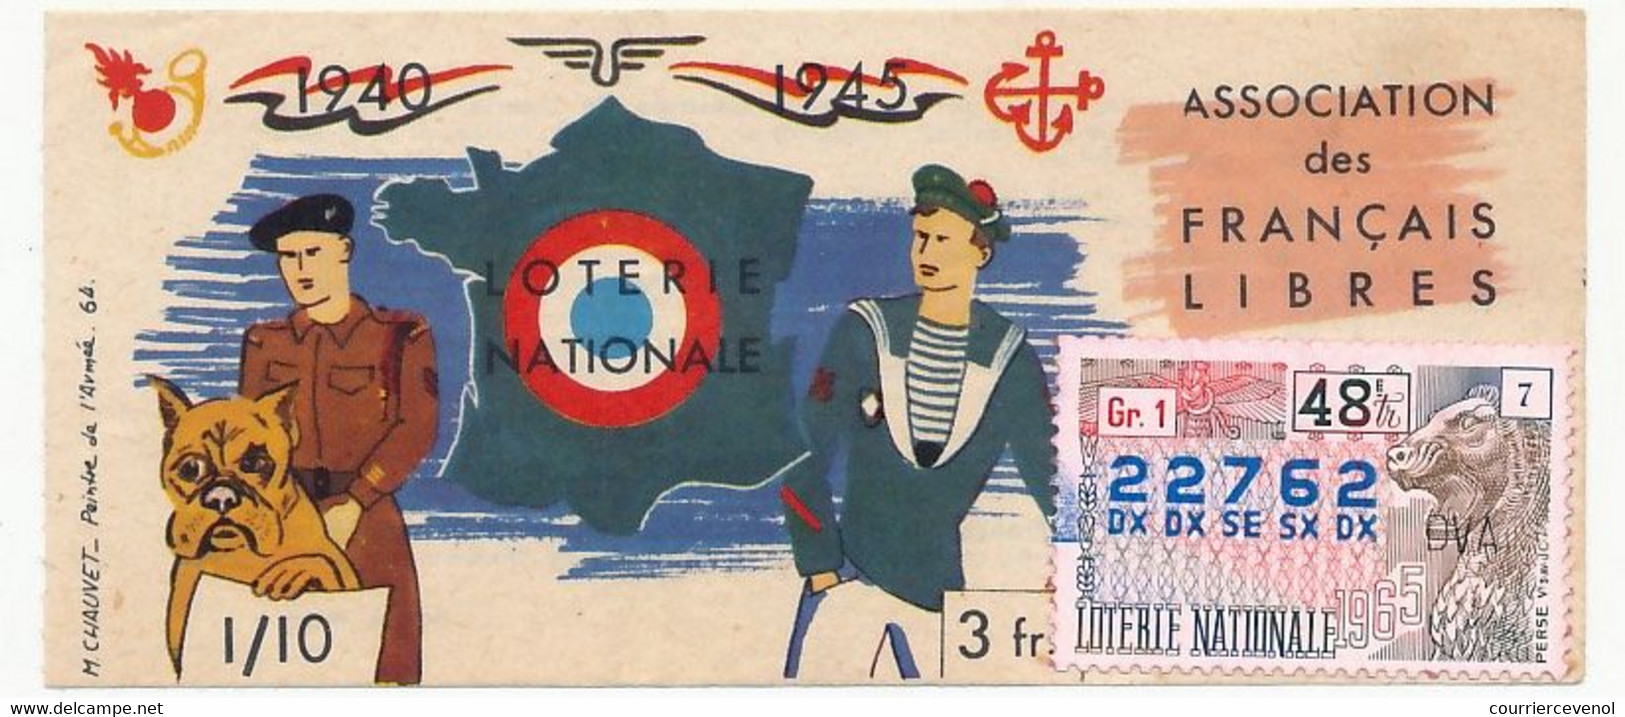 FRANCE - Loterie Nationale - Association Des Français Libres - 48eme Tranche - 1965 - Lottery Tickets